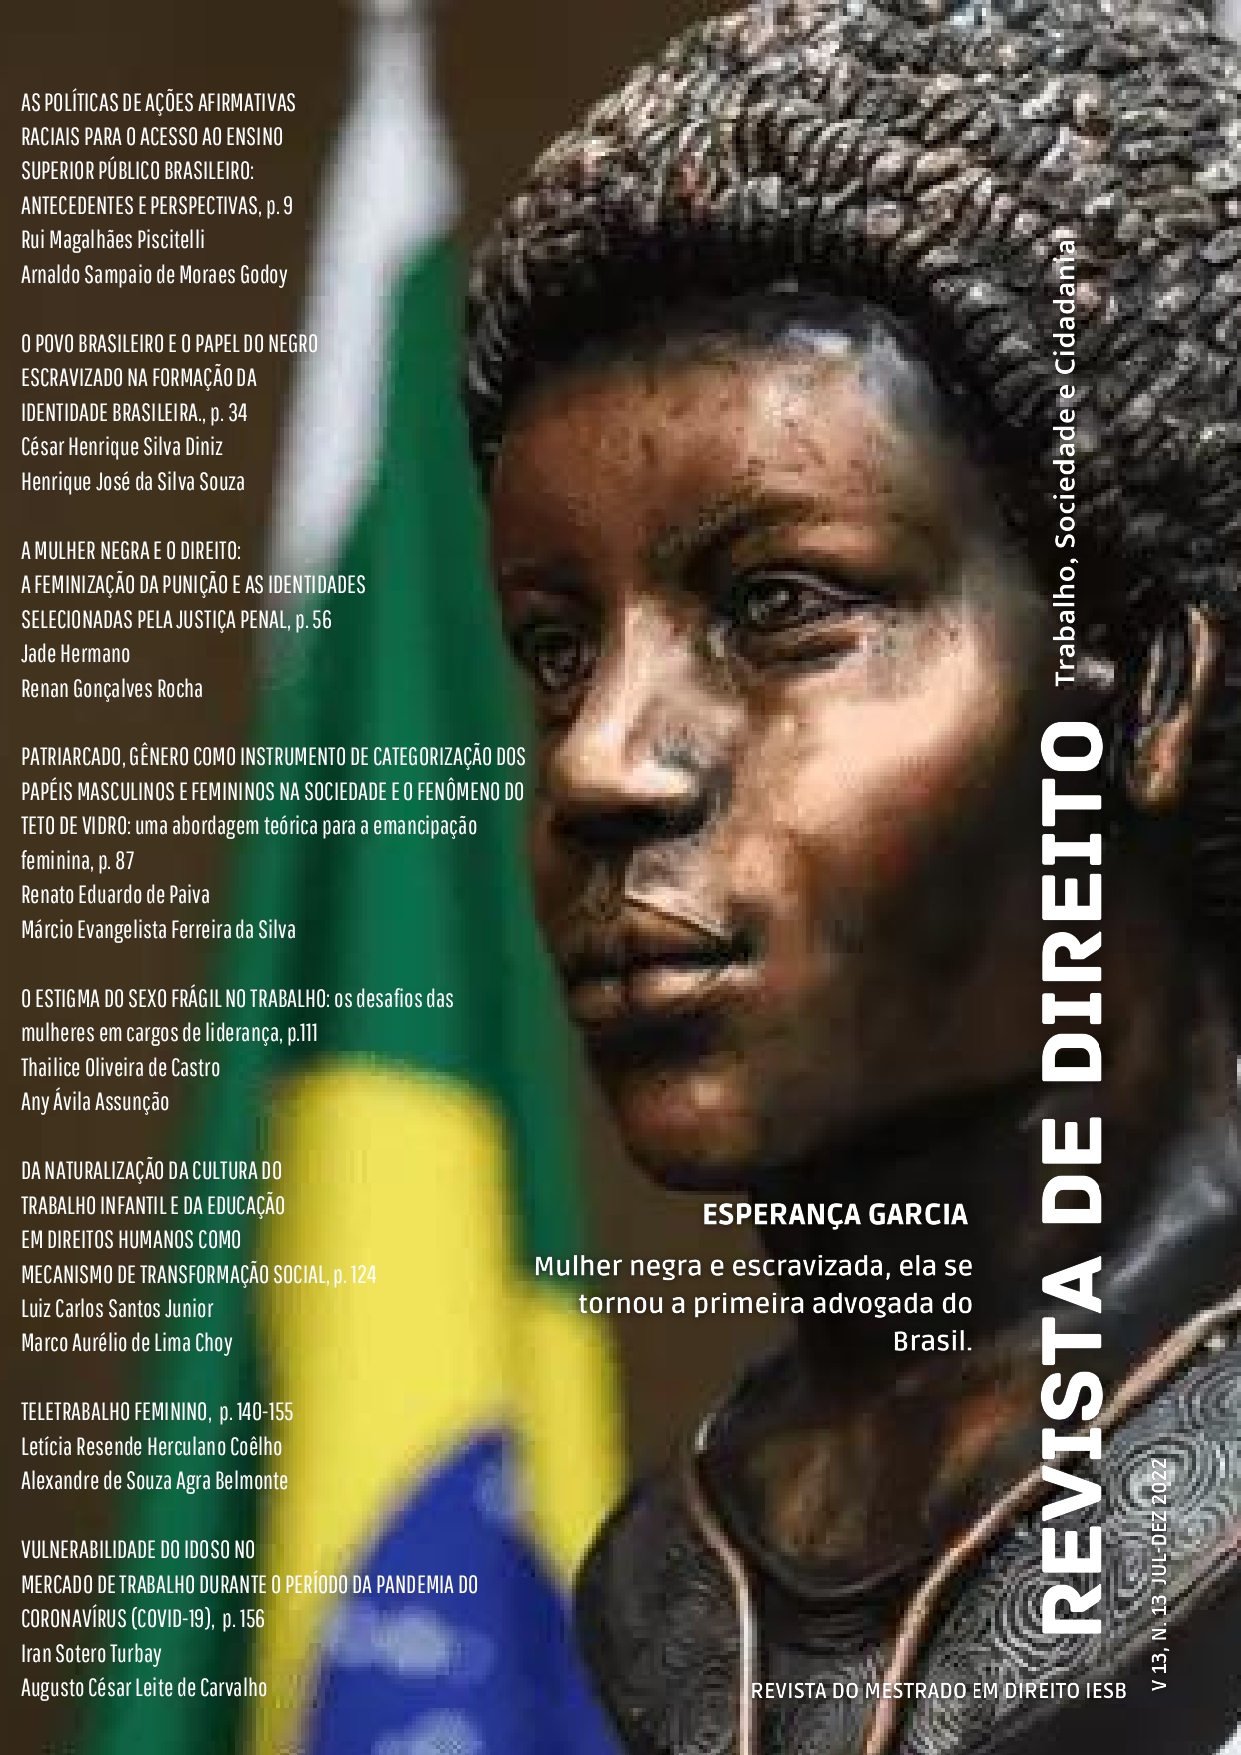 Foto de Esperança Garcia, mulher negra e escravizada que foi reconhecida como a primeira advogada do Brasil